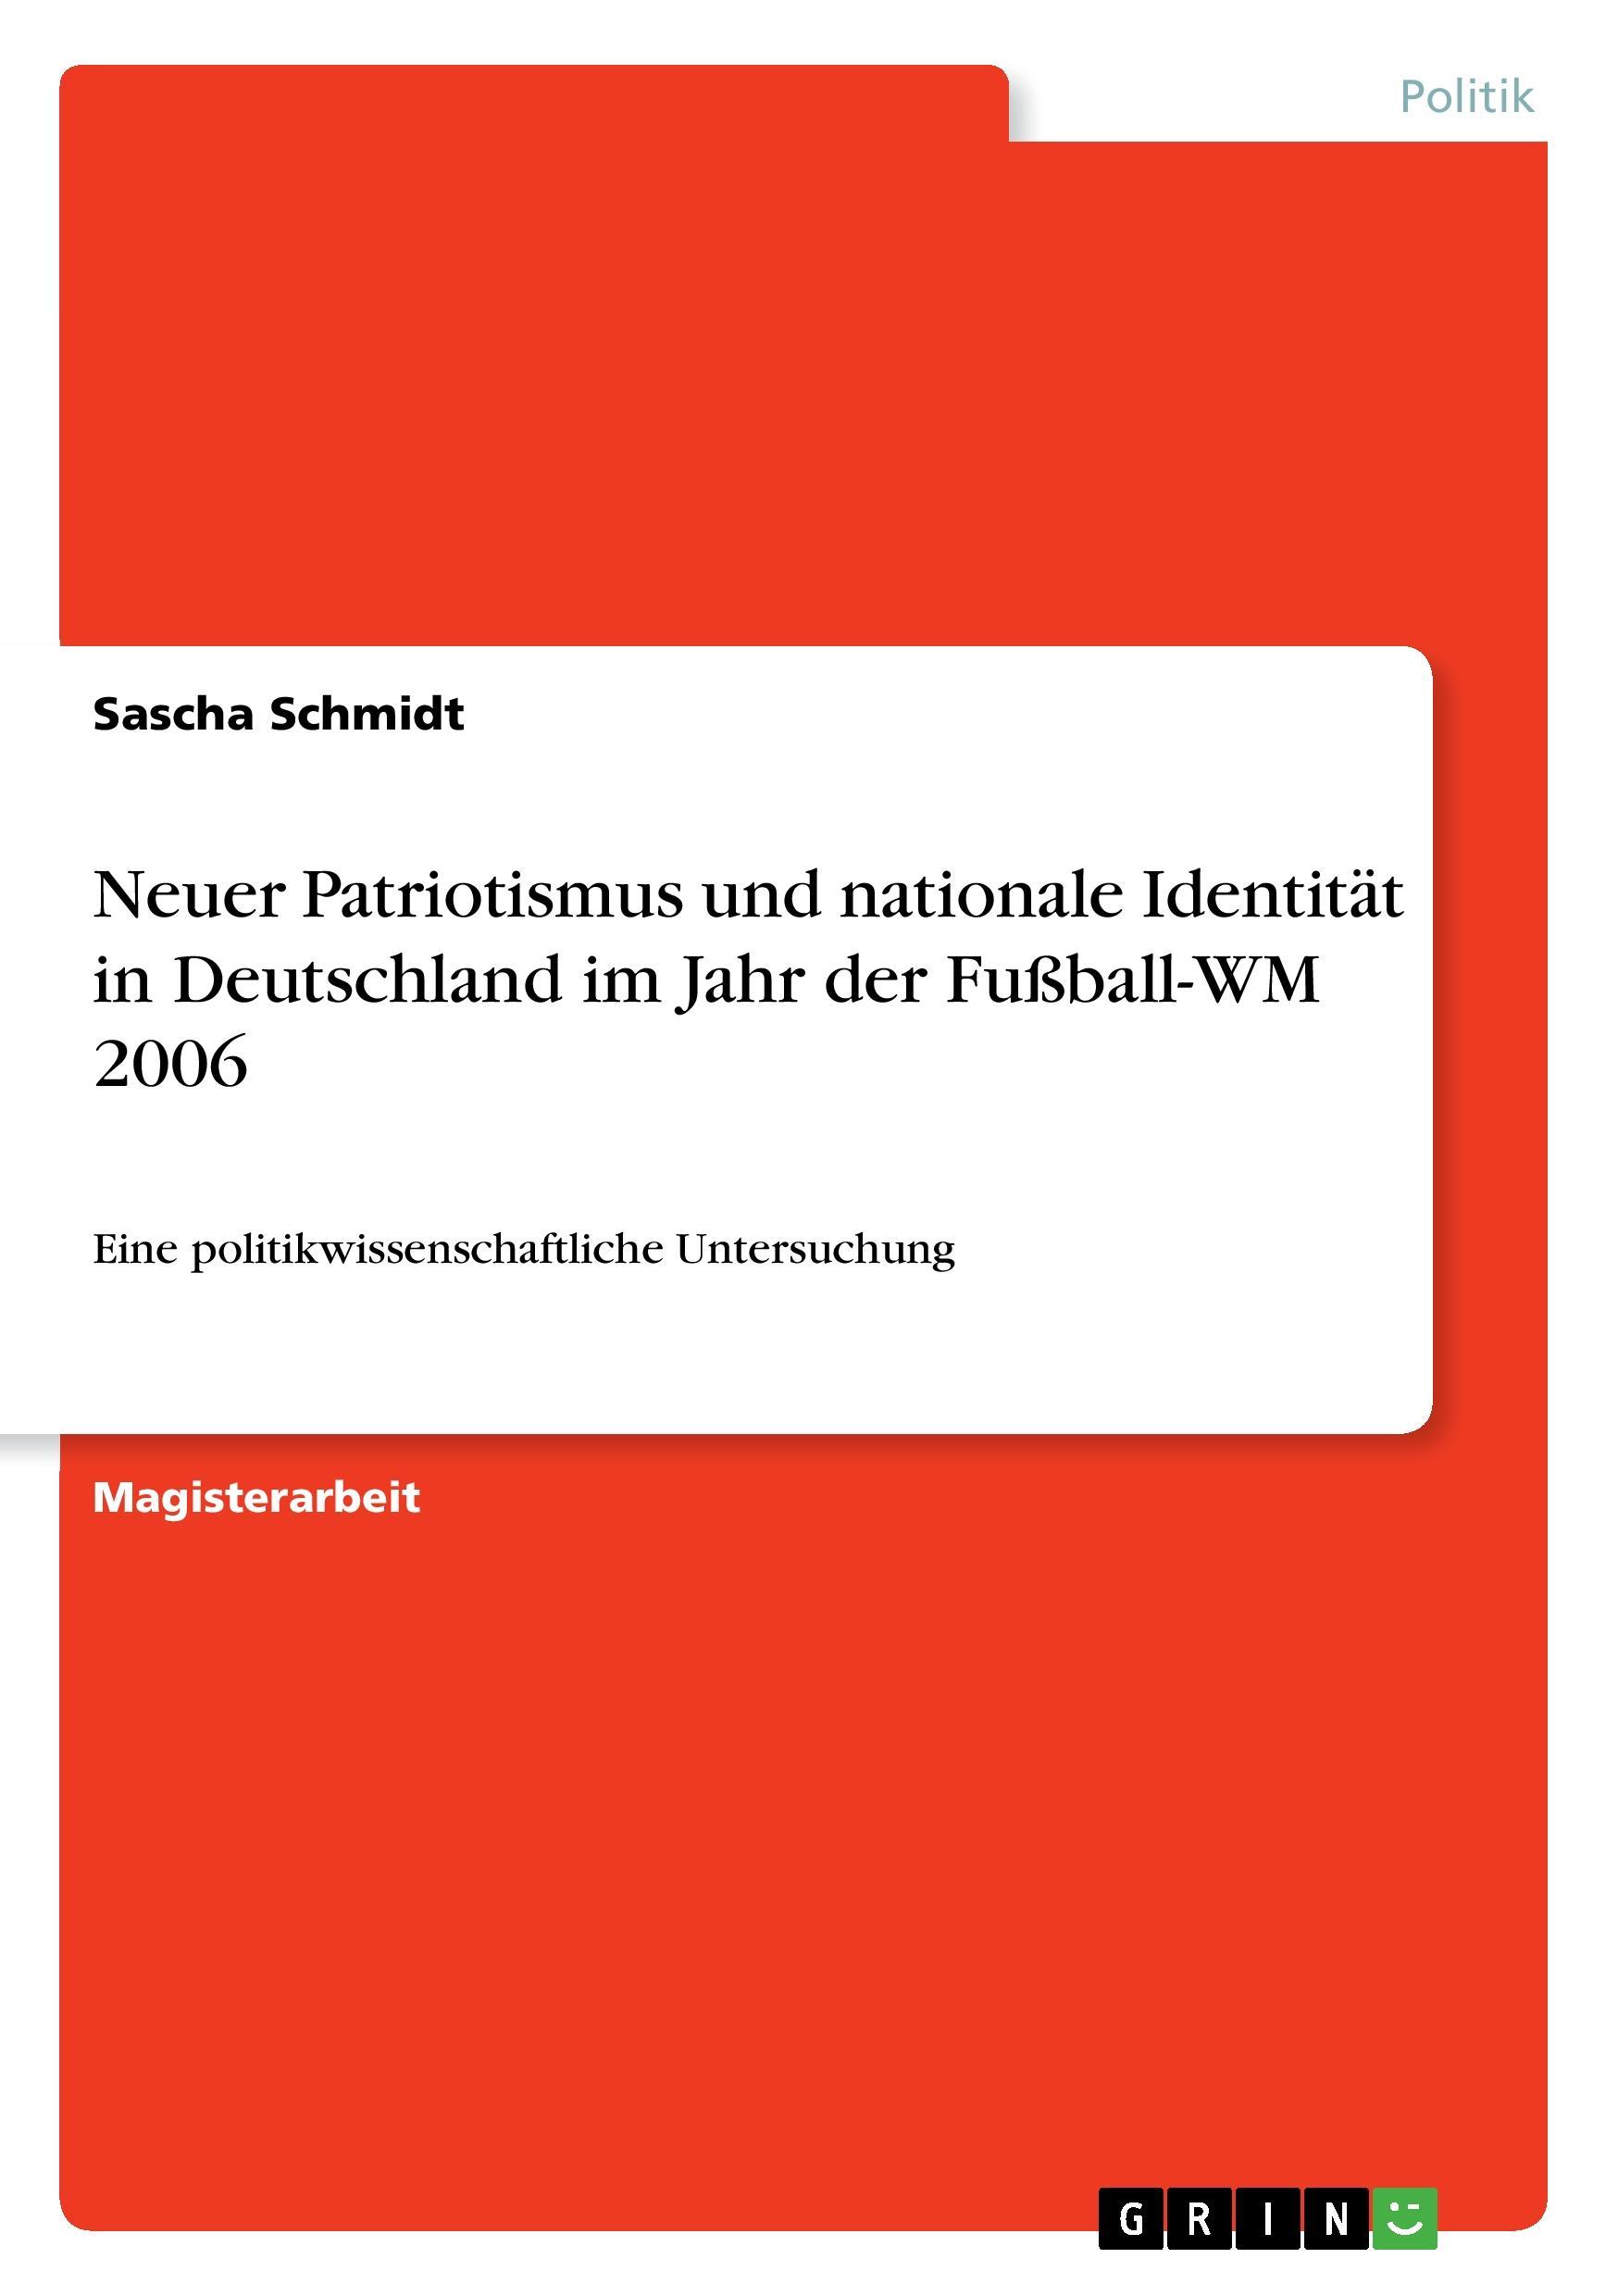 Neuer Patriotismus und nationale Identitaet in Deutschland im Jahr der Fussball-WM 2006 - Schmidt, Sascha